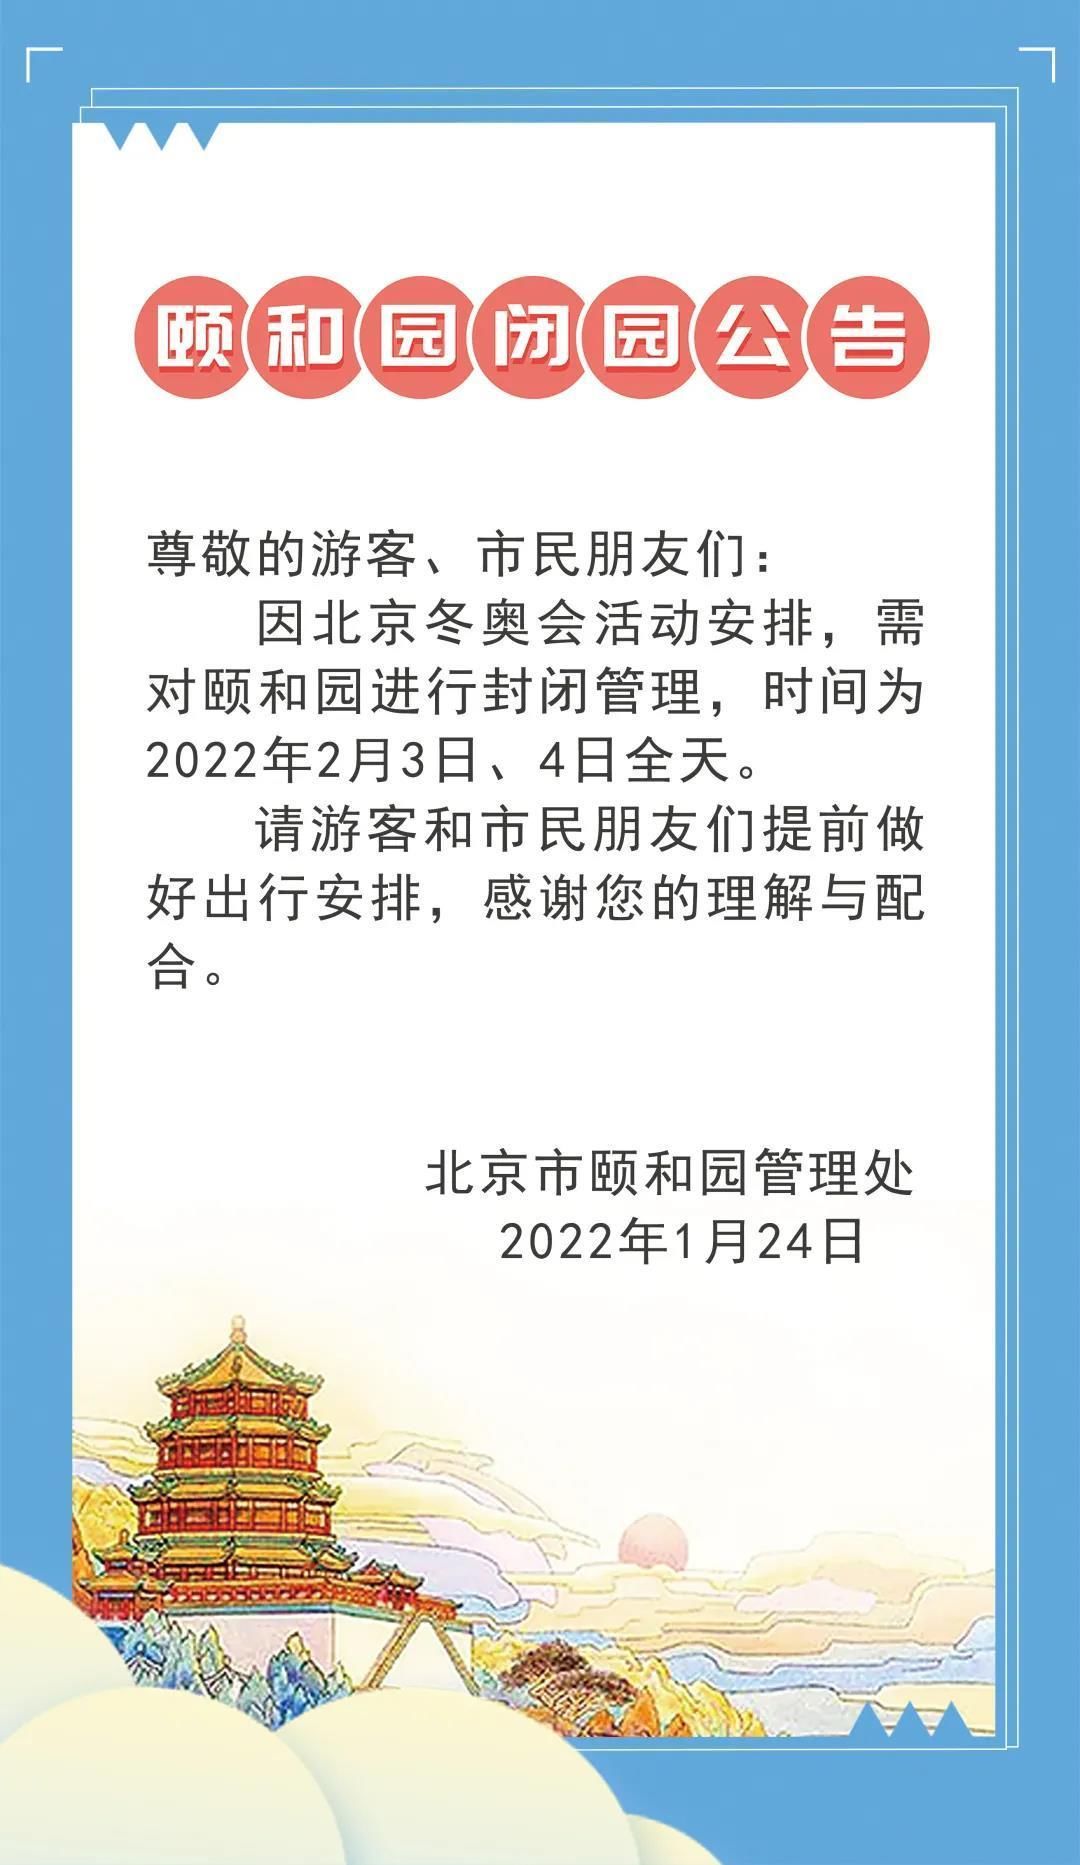 央广网|颐和园景区发布闭园公告 2月3日、4日全天关闭